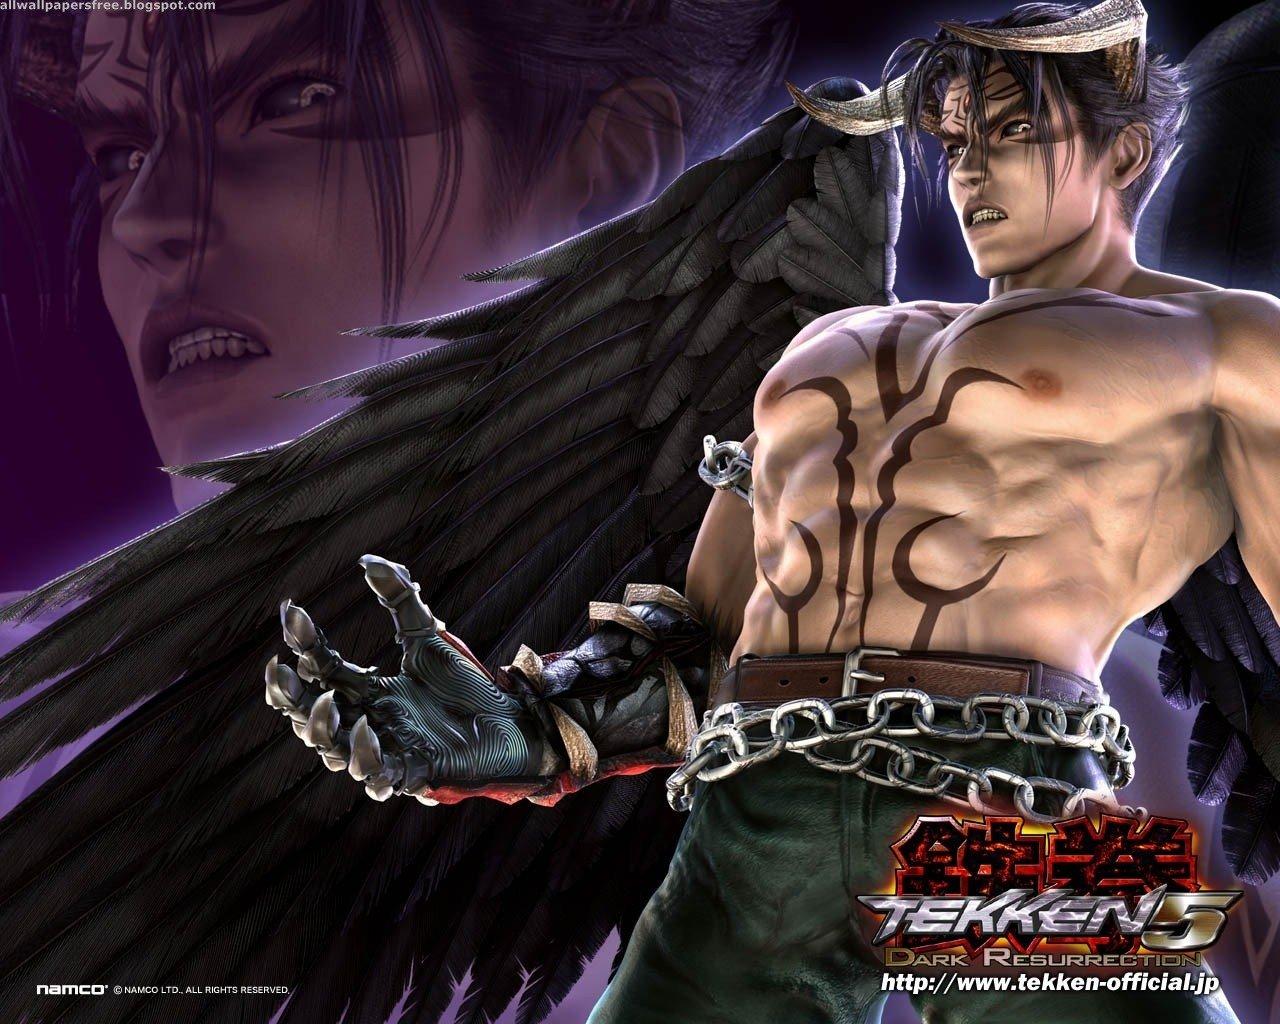 Tekken 5 Dark Resurrection Wallpapers - Top Free Tekken 5 Dark ...